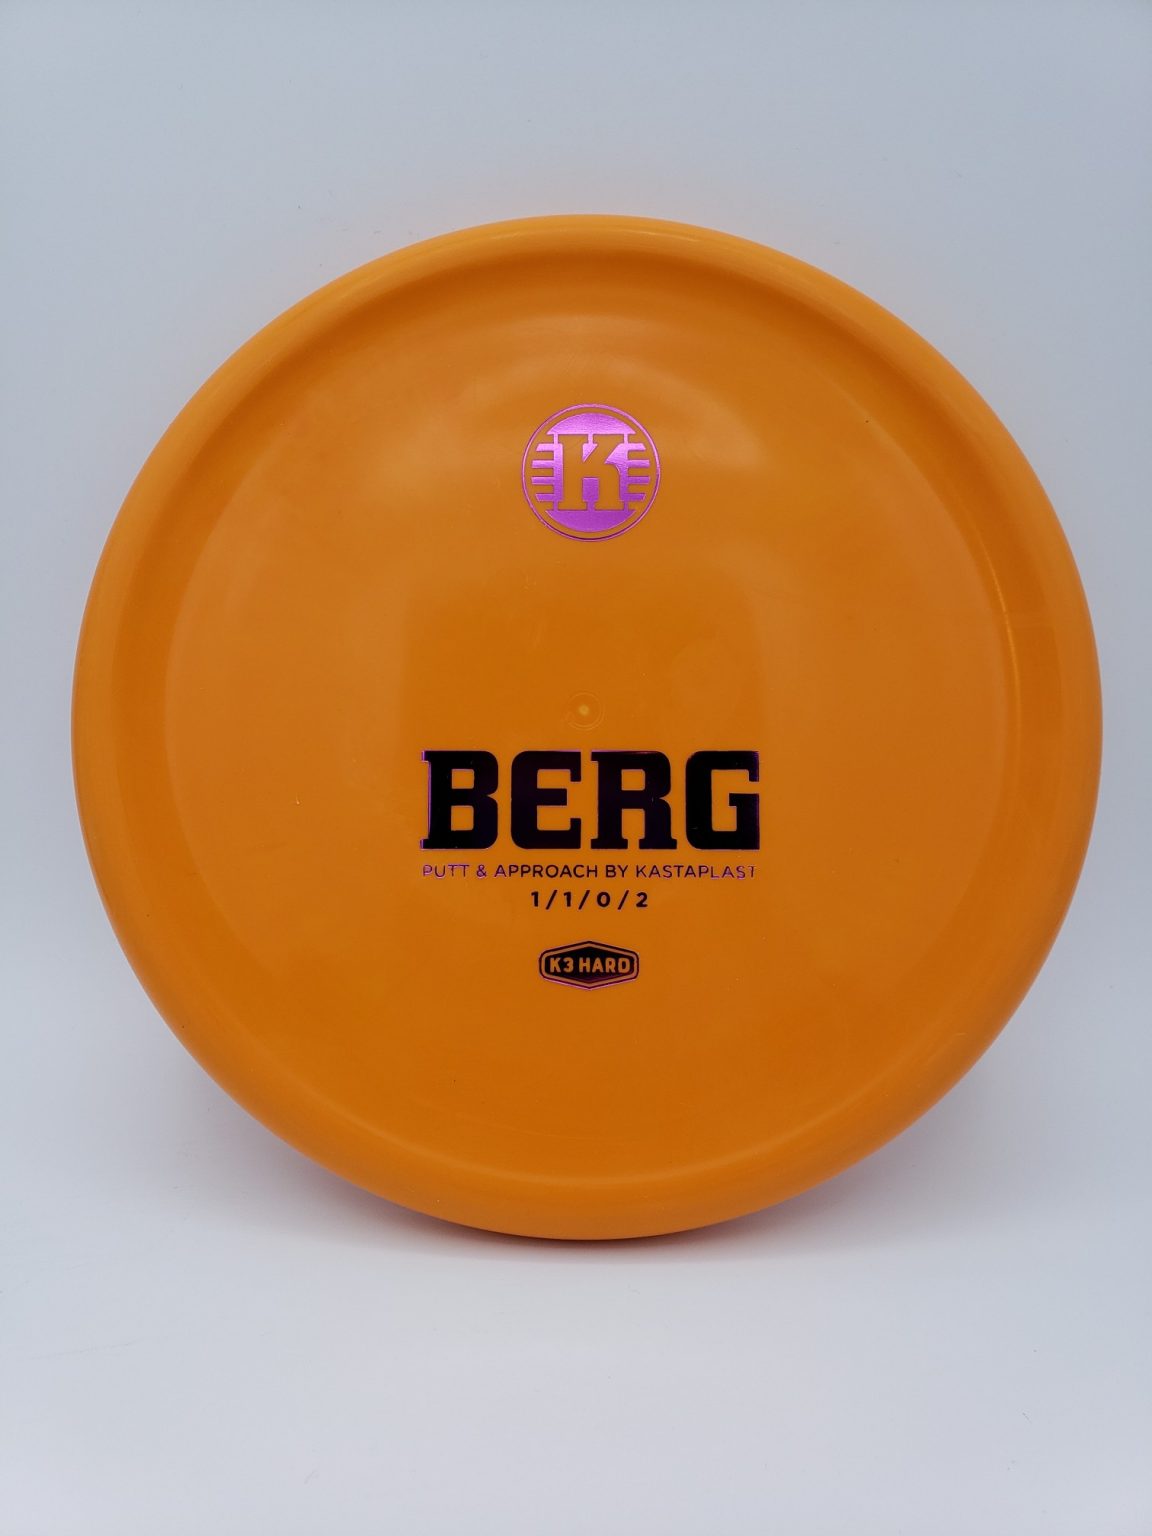 Kastaplast K3 Hard Berg orange - Par Plastics